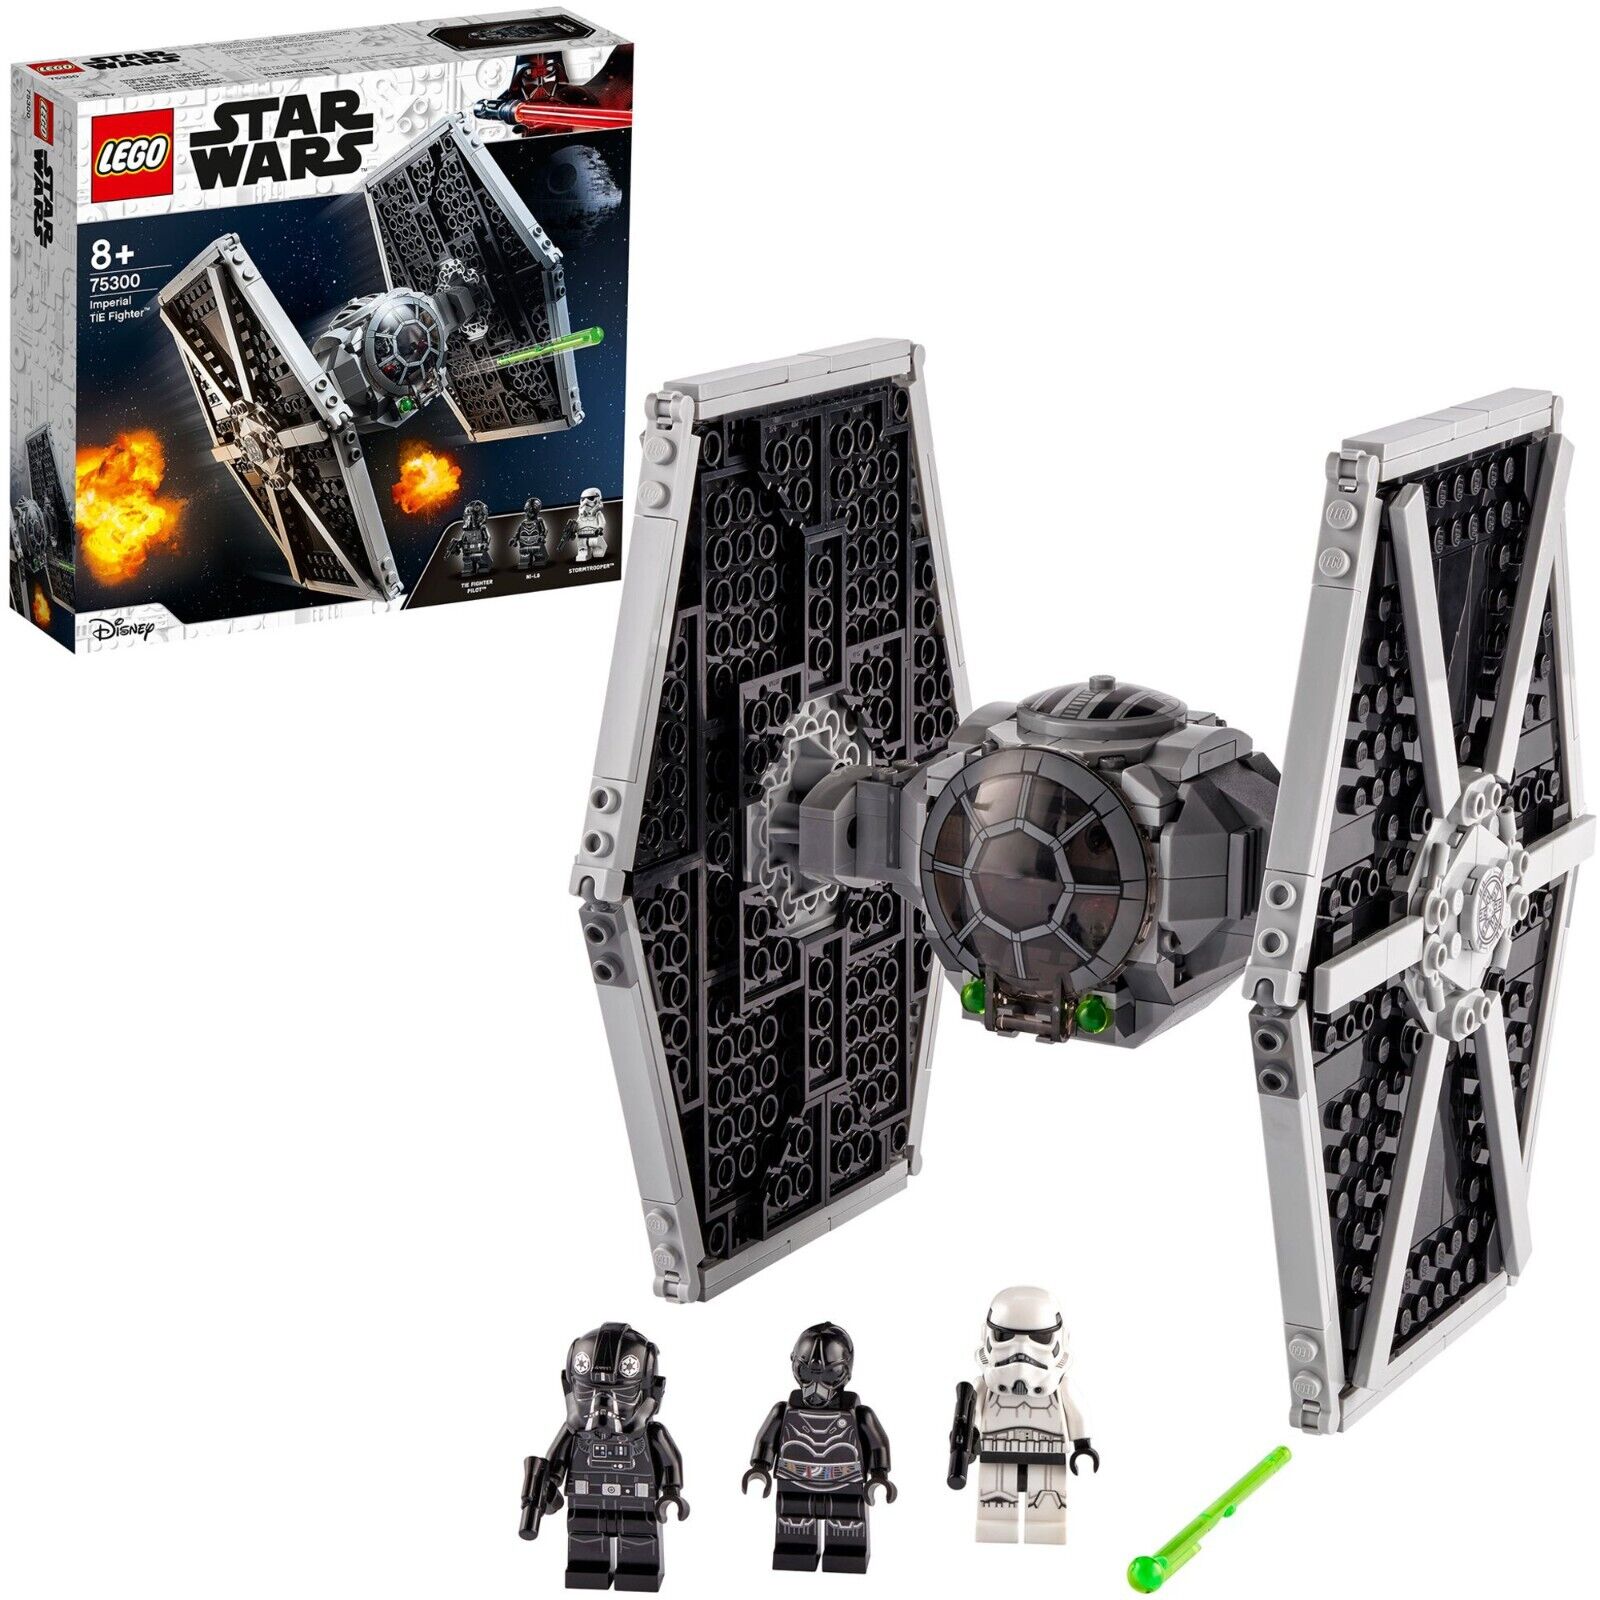 Bild zu Lego Star Wars Imperial TIE Fighter (75300) für 23,99€ (Vergleich: 30,72€)